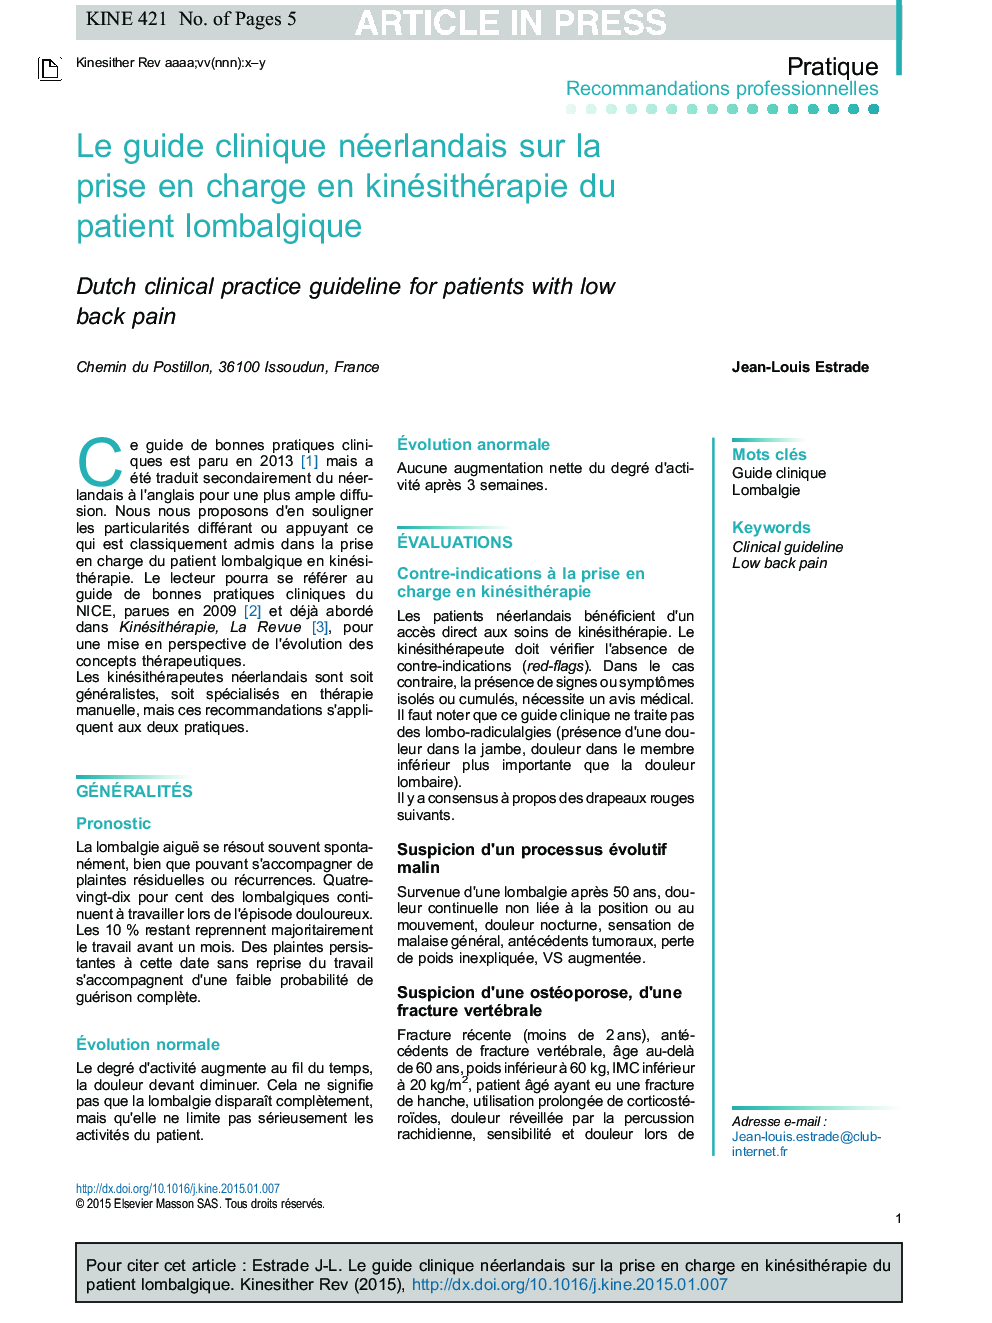 Le guide clinique néerlandais sur la prise en charge en kinésithérapie du patient lombalgique